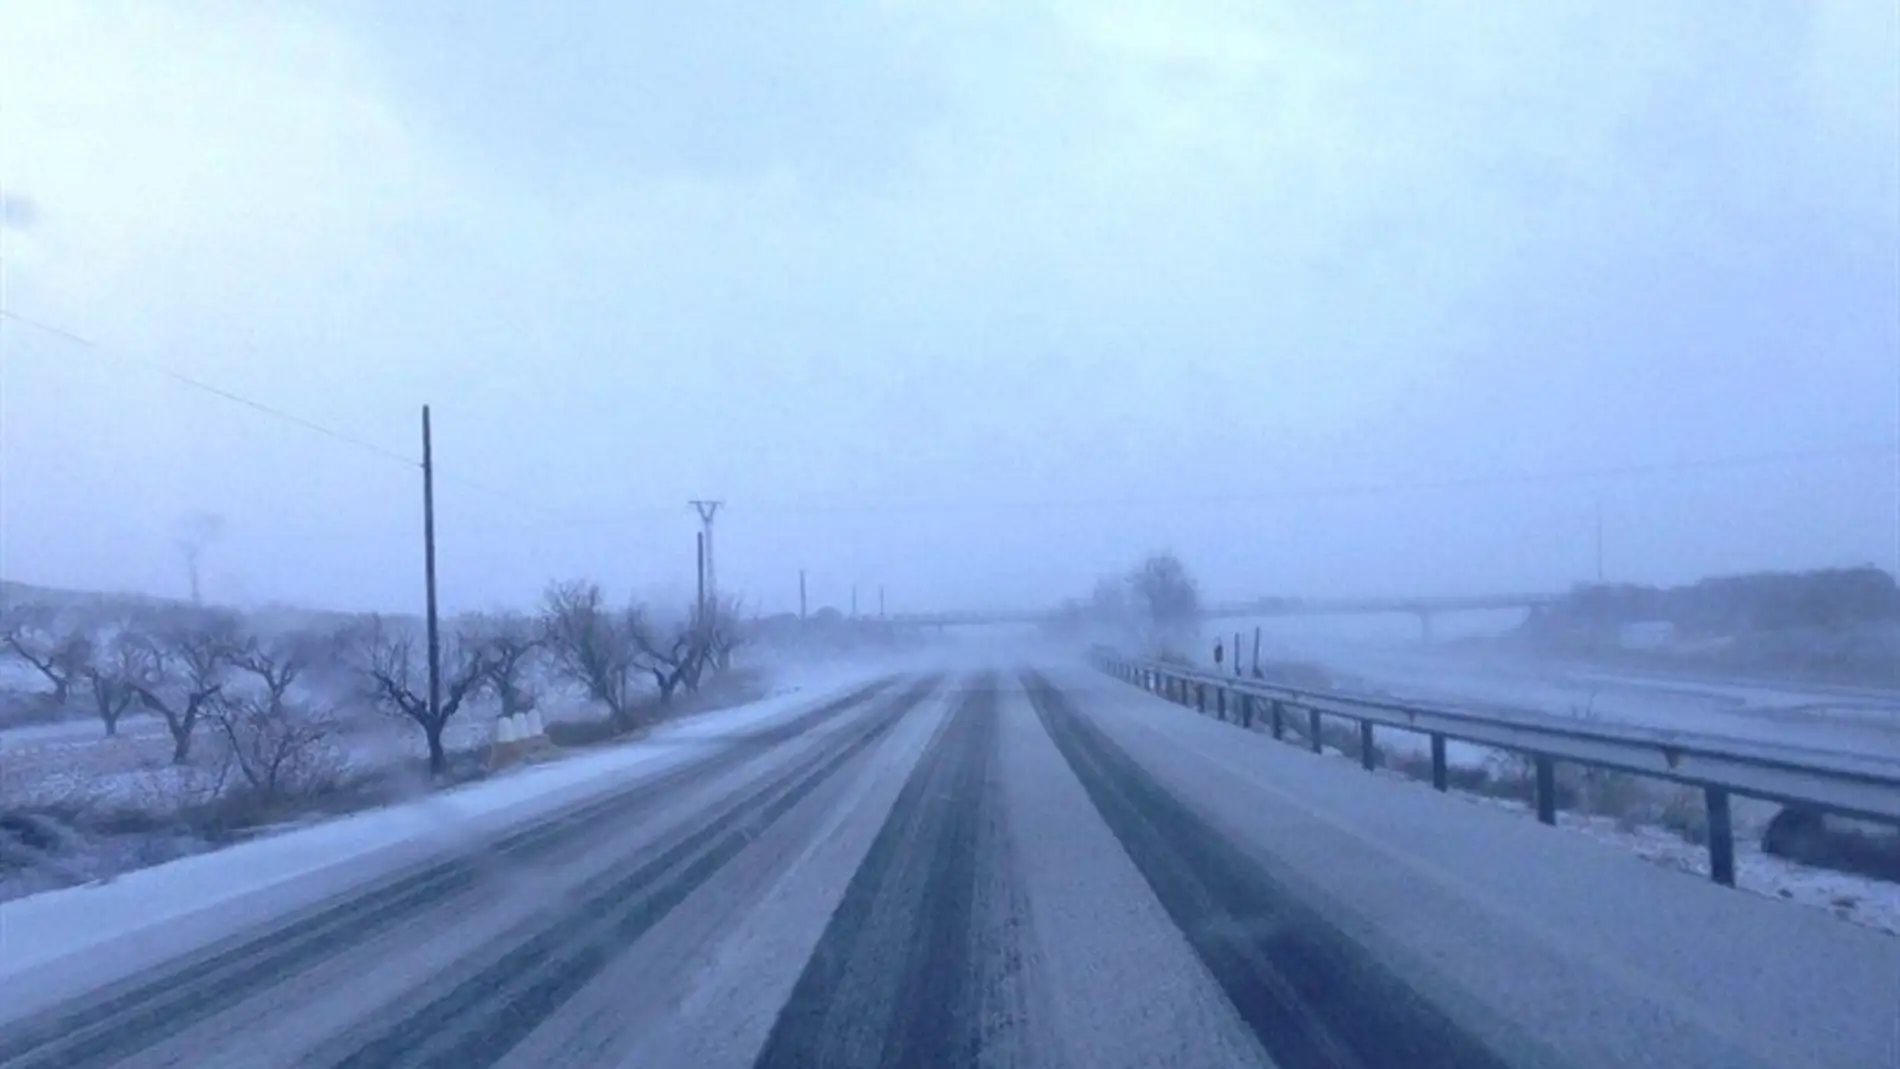 Precaución en la carretera ante la posibilidad de nieve y hielo